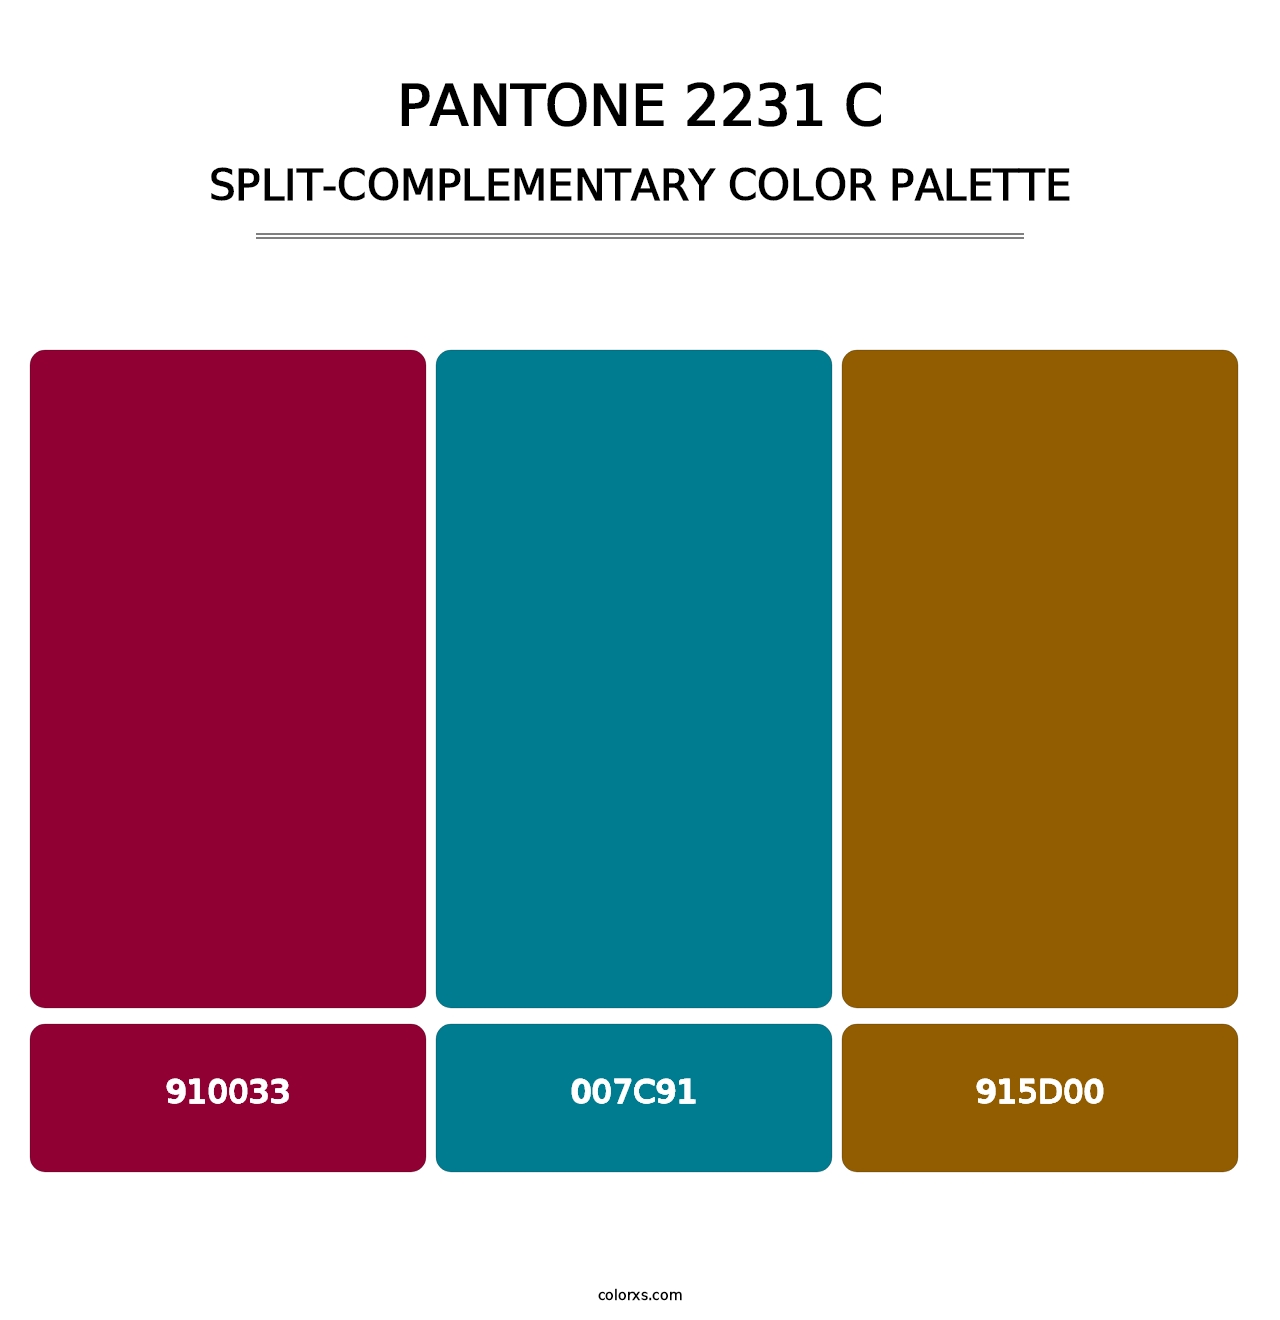 PANTONE 2231 C - Split-Complementary Color Palette